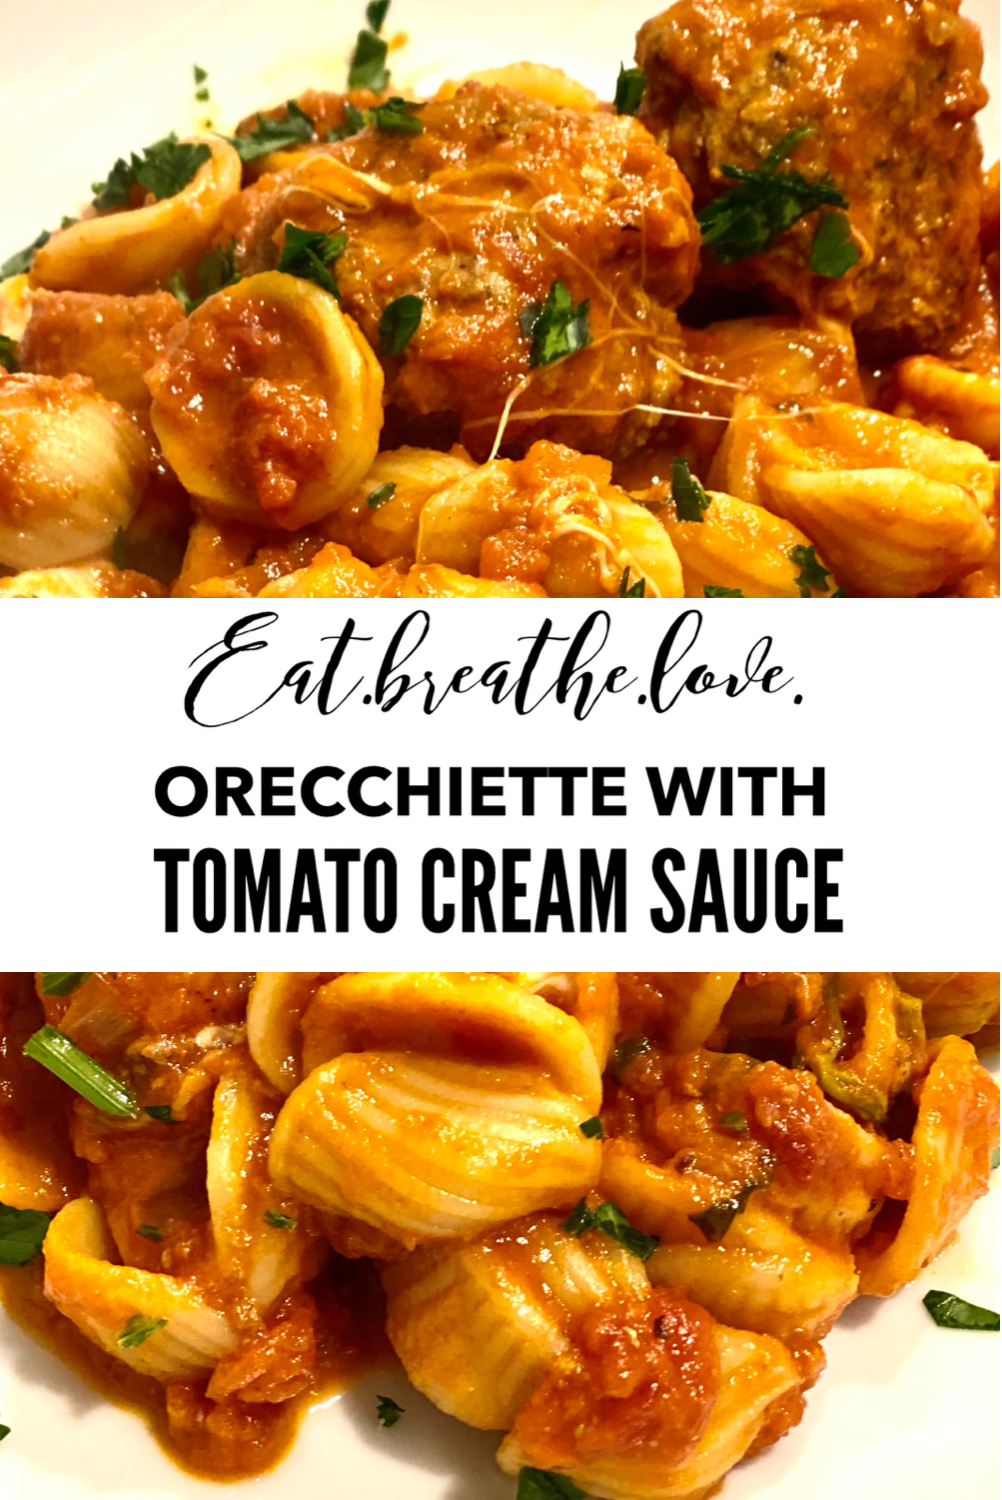 Orecchiette with Tomato Cream Sauce